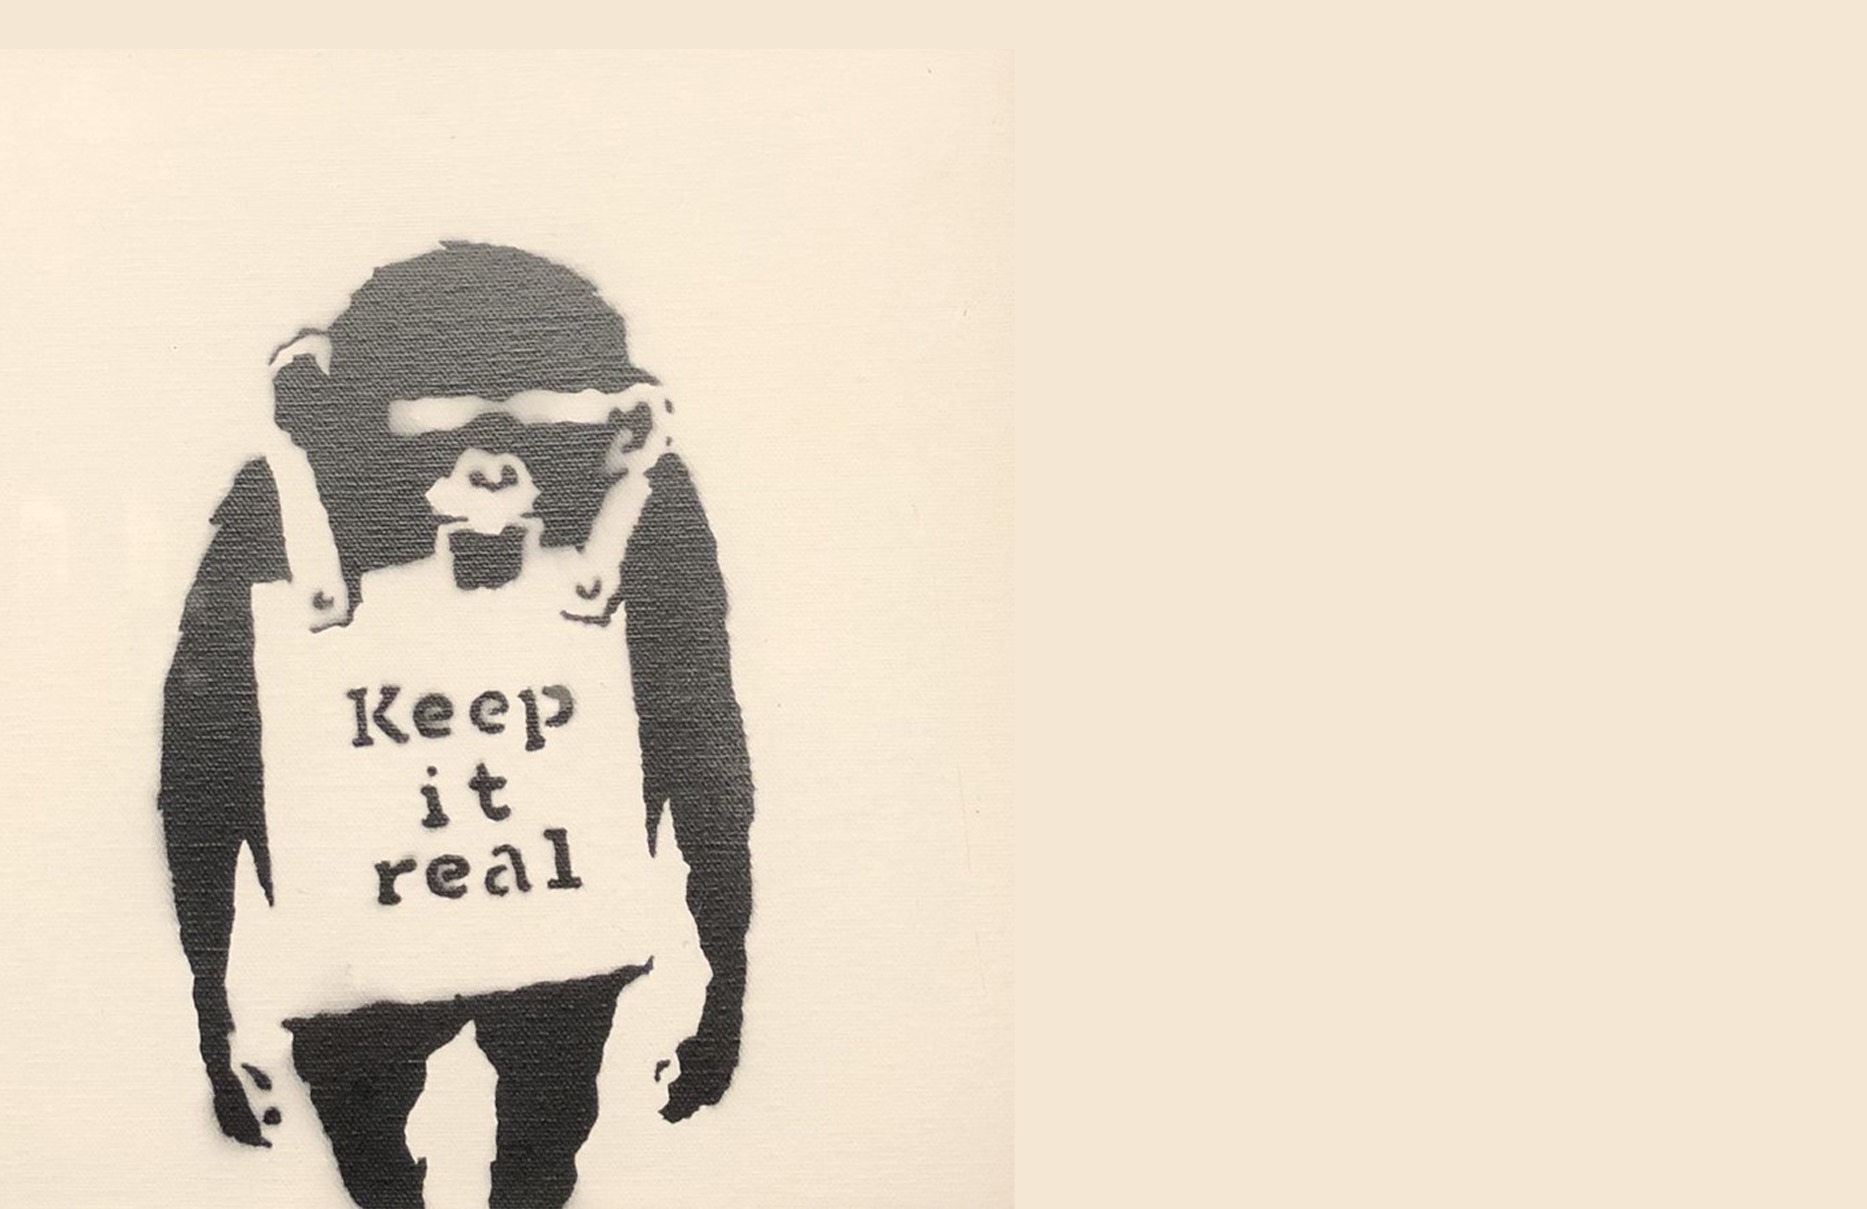 Affe mit Schild "Keep it real" (de: Bleib authentisch) auf der Ausstellung "Banksy - A Vandal turned Idol" am Kleisteck in Berlin